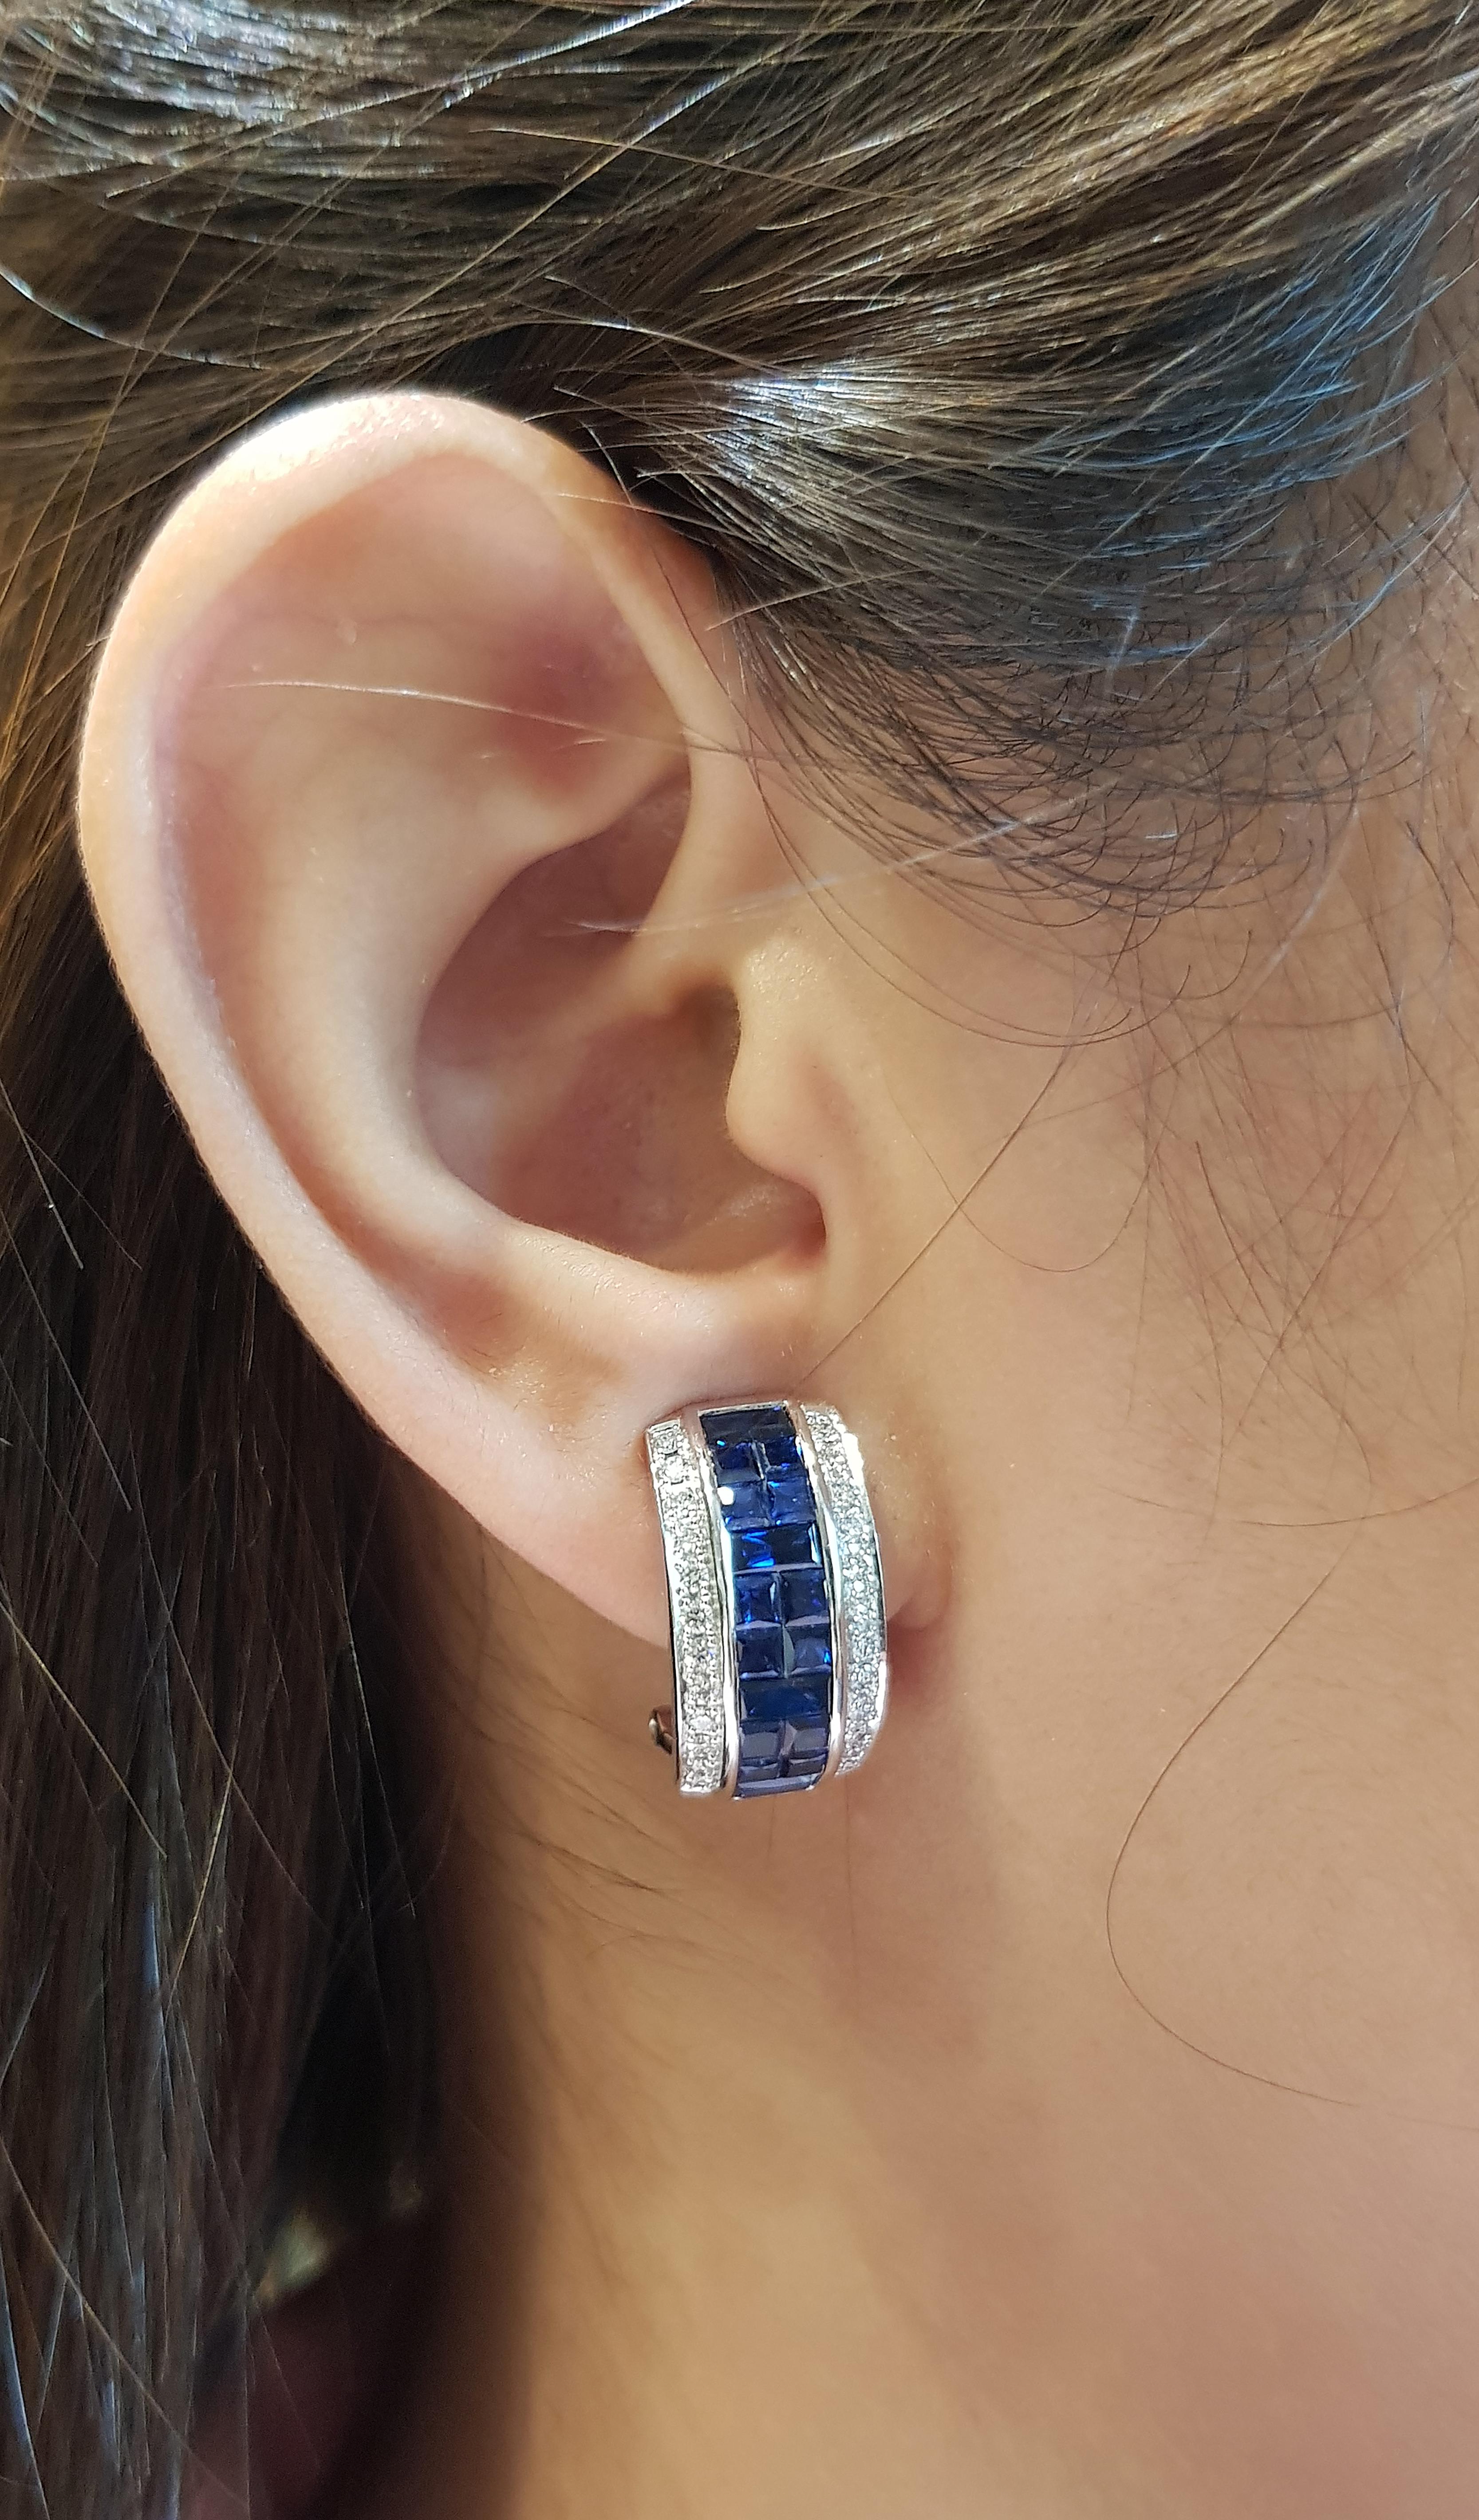 Blauer Saphir 5,18 Karat mit Diamant 0,57 Karat Ohrringe in 18 Karat Weißgold gefasst

Breite:  1.0 cm 
Länge: 1,9 cm
Gesamtgewicht: 10,55 Gramm

